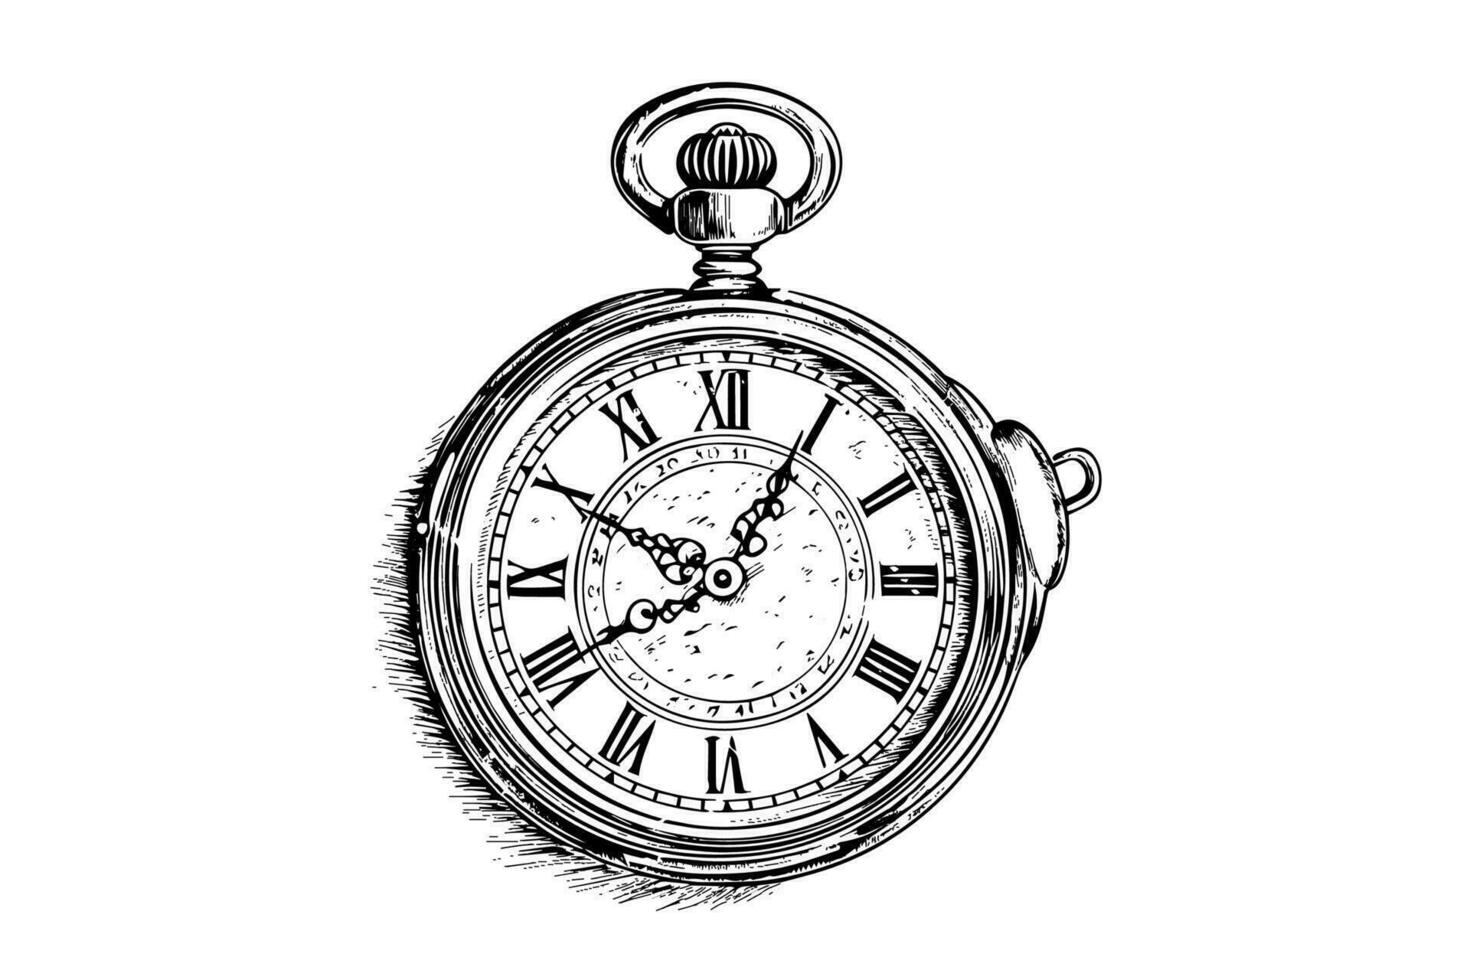 antico tasca orologio Vintage ▾ inciso mano disegnato vettore illustrazione.